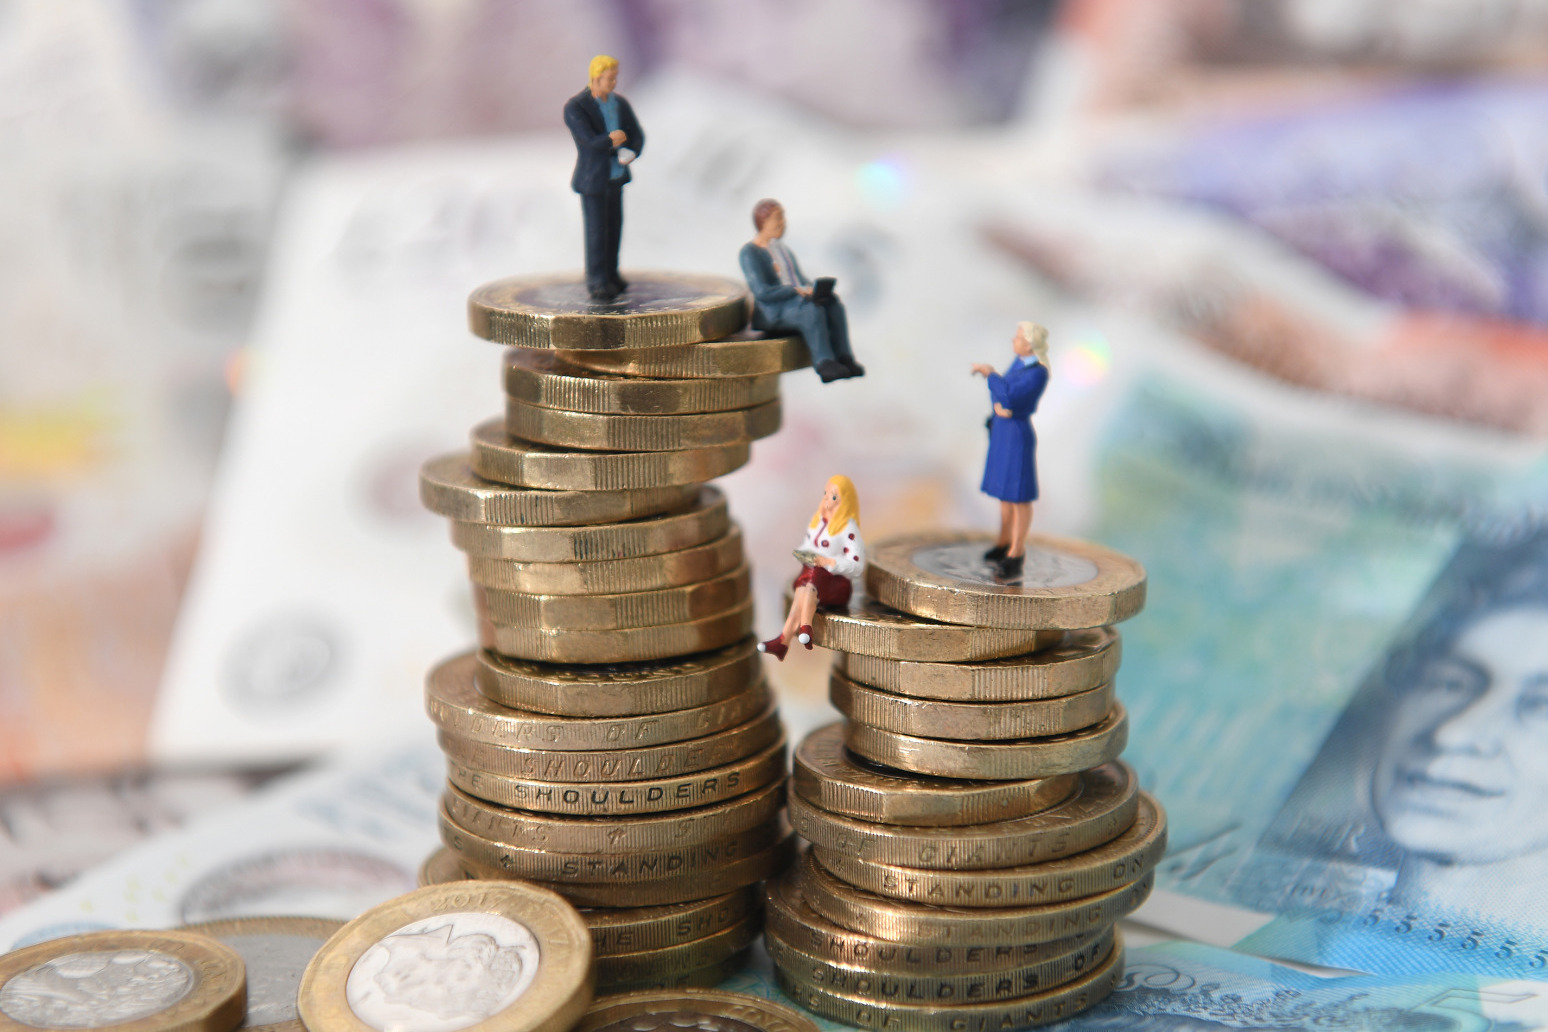 Gender pay gap widens ‘dramatically’ after women have children 